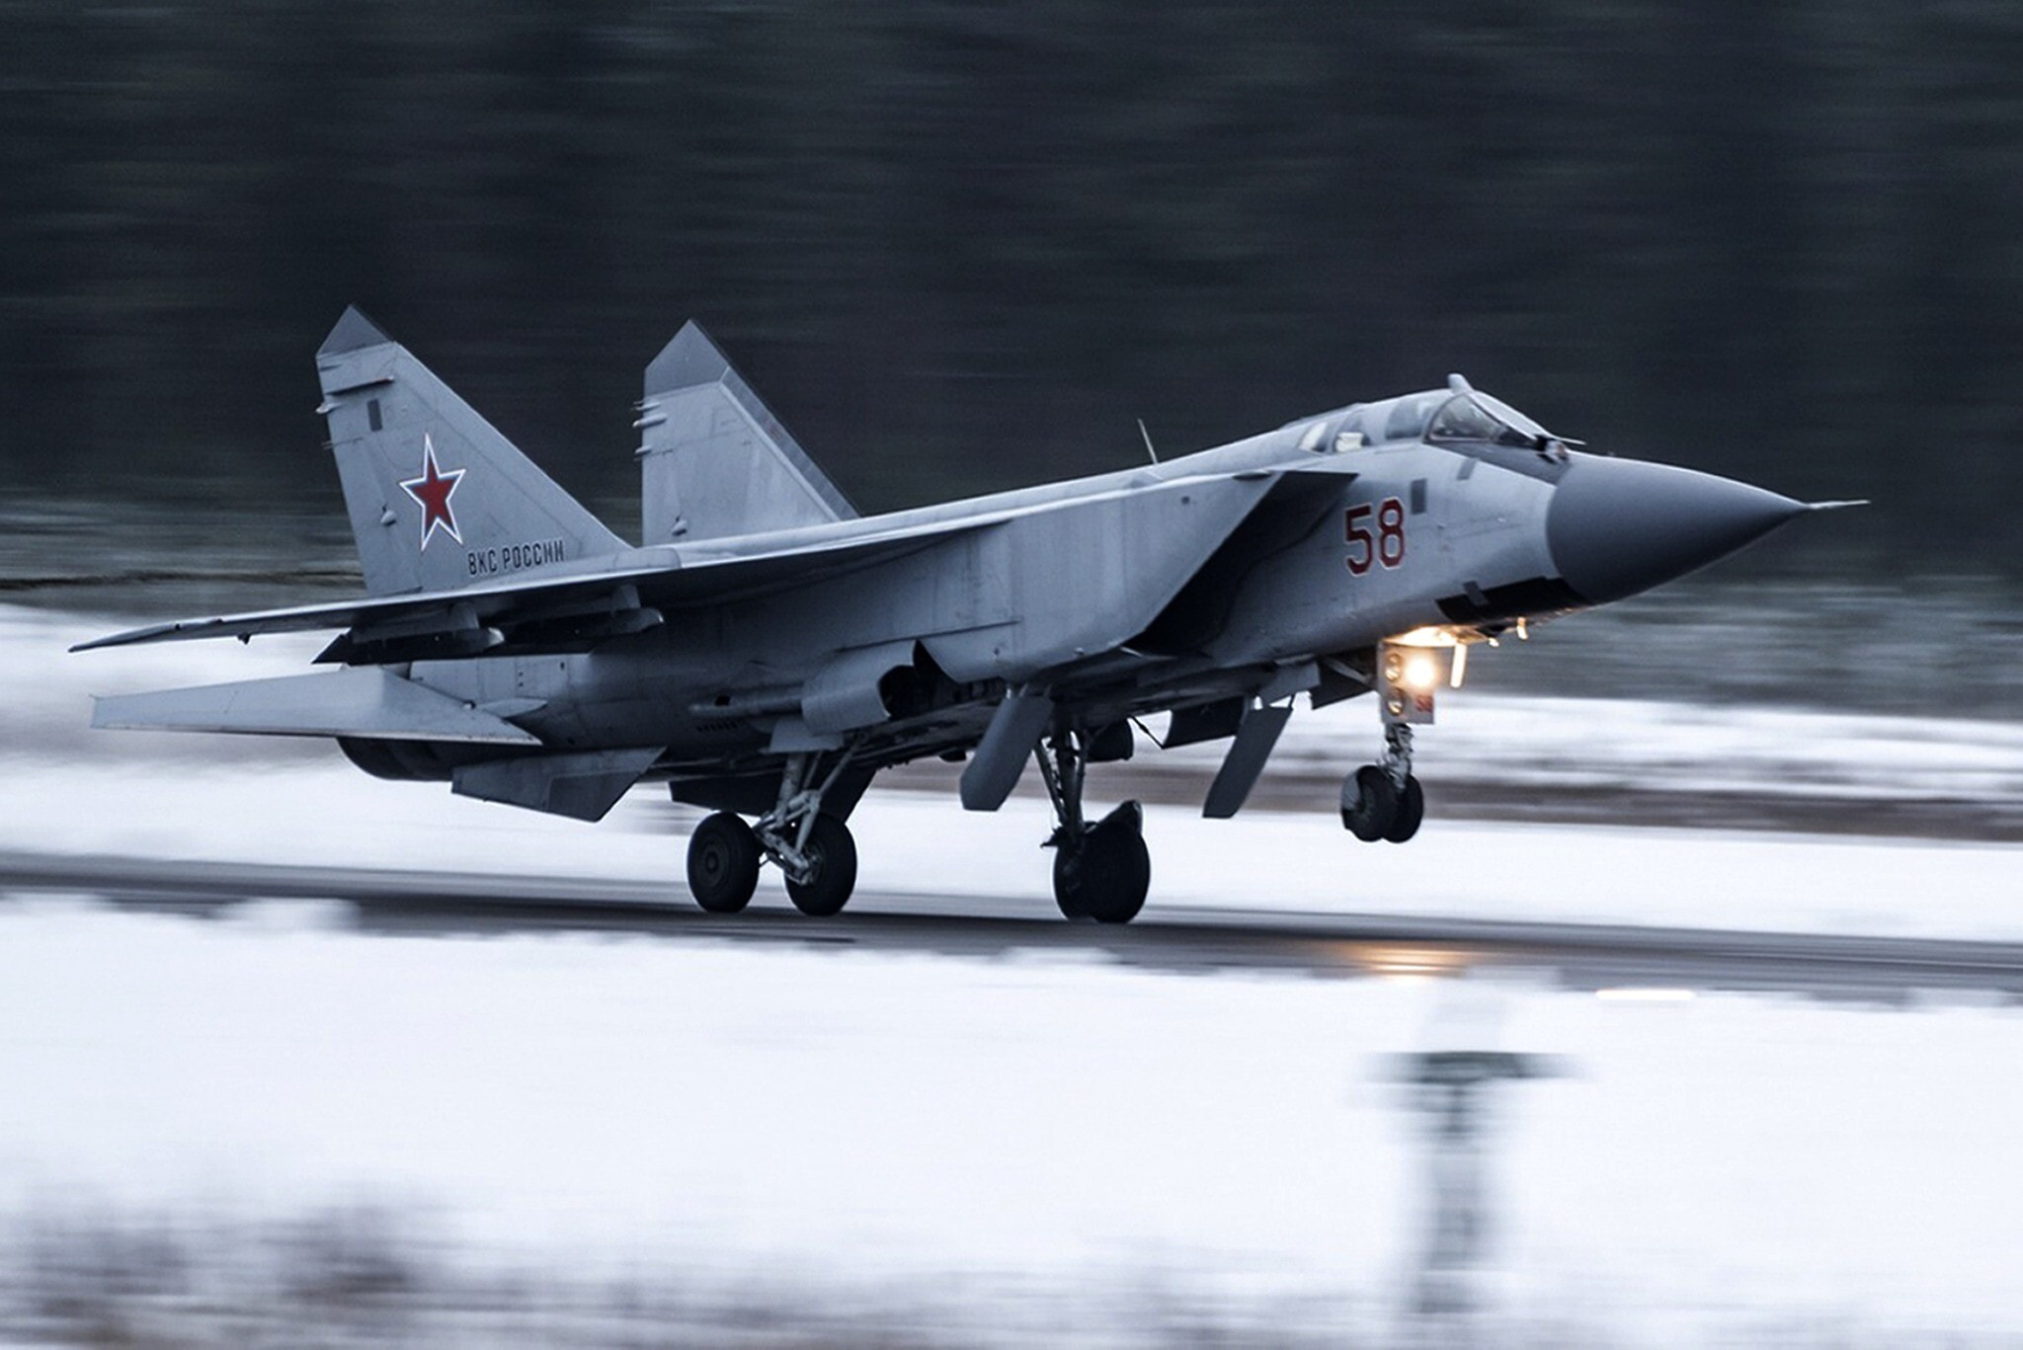 Un caza MiG-31 de la fuerza aérea rusa despega en una base aérea durante unos ejercicios militares en la región de Tver, Rusia, el 14 de febrero de 2022. (Servicio de prensa del Ministerio de Defensa ruso vía AP)